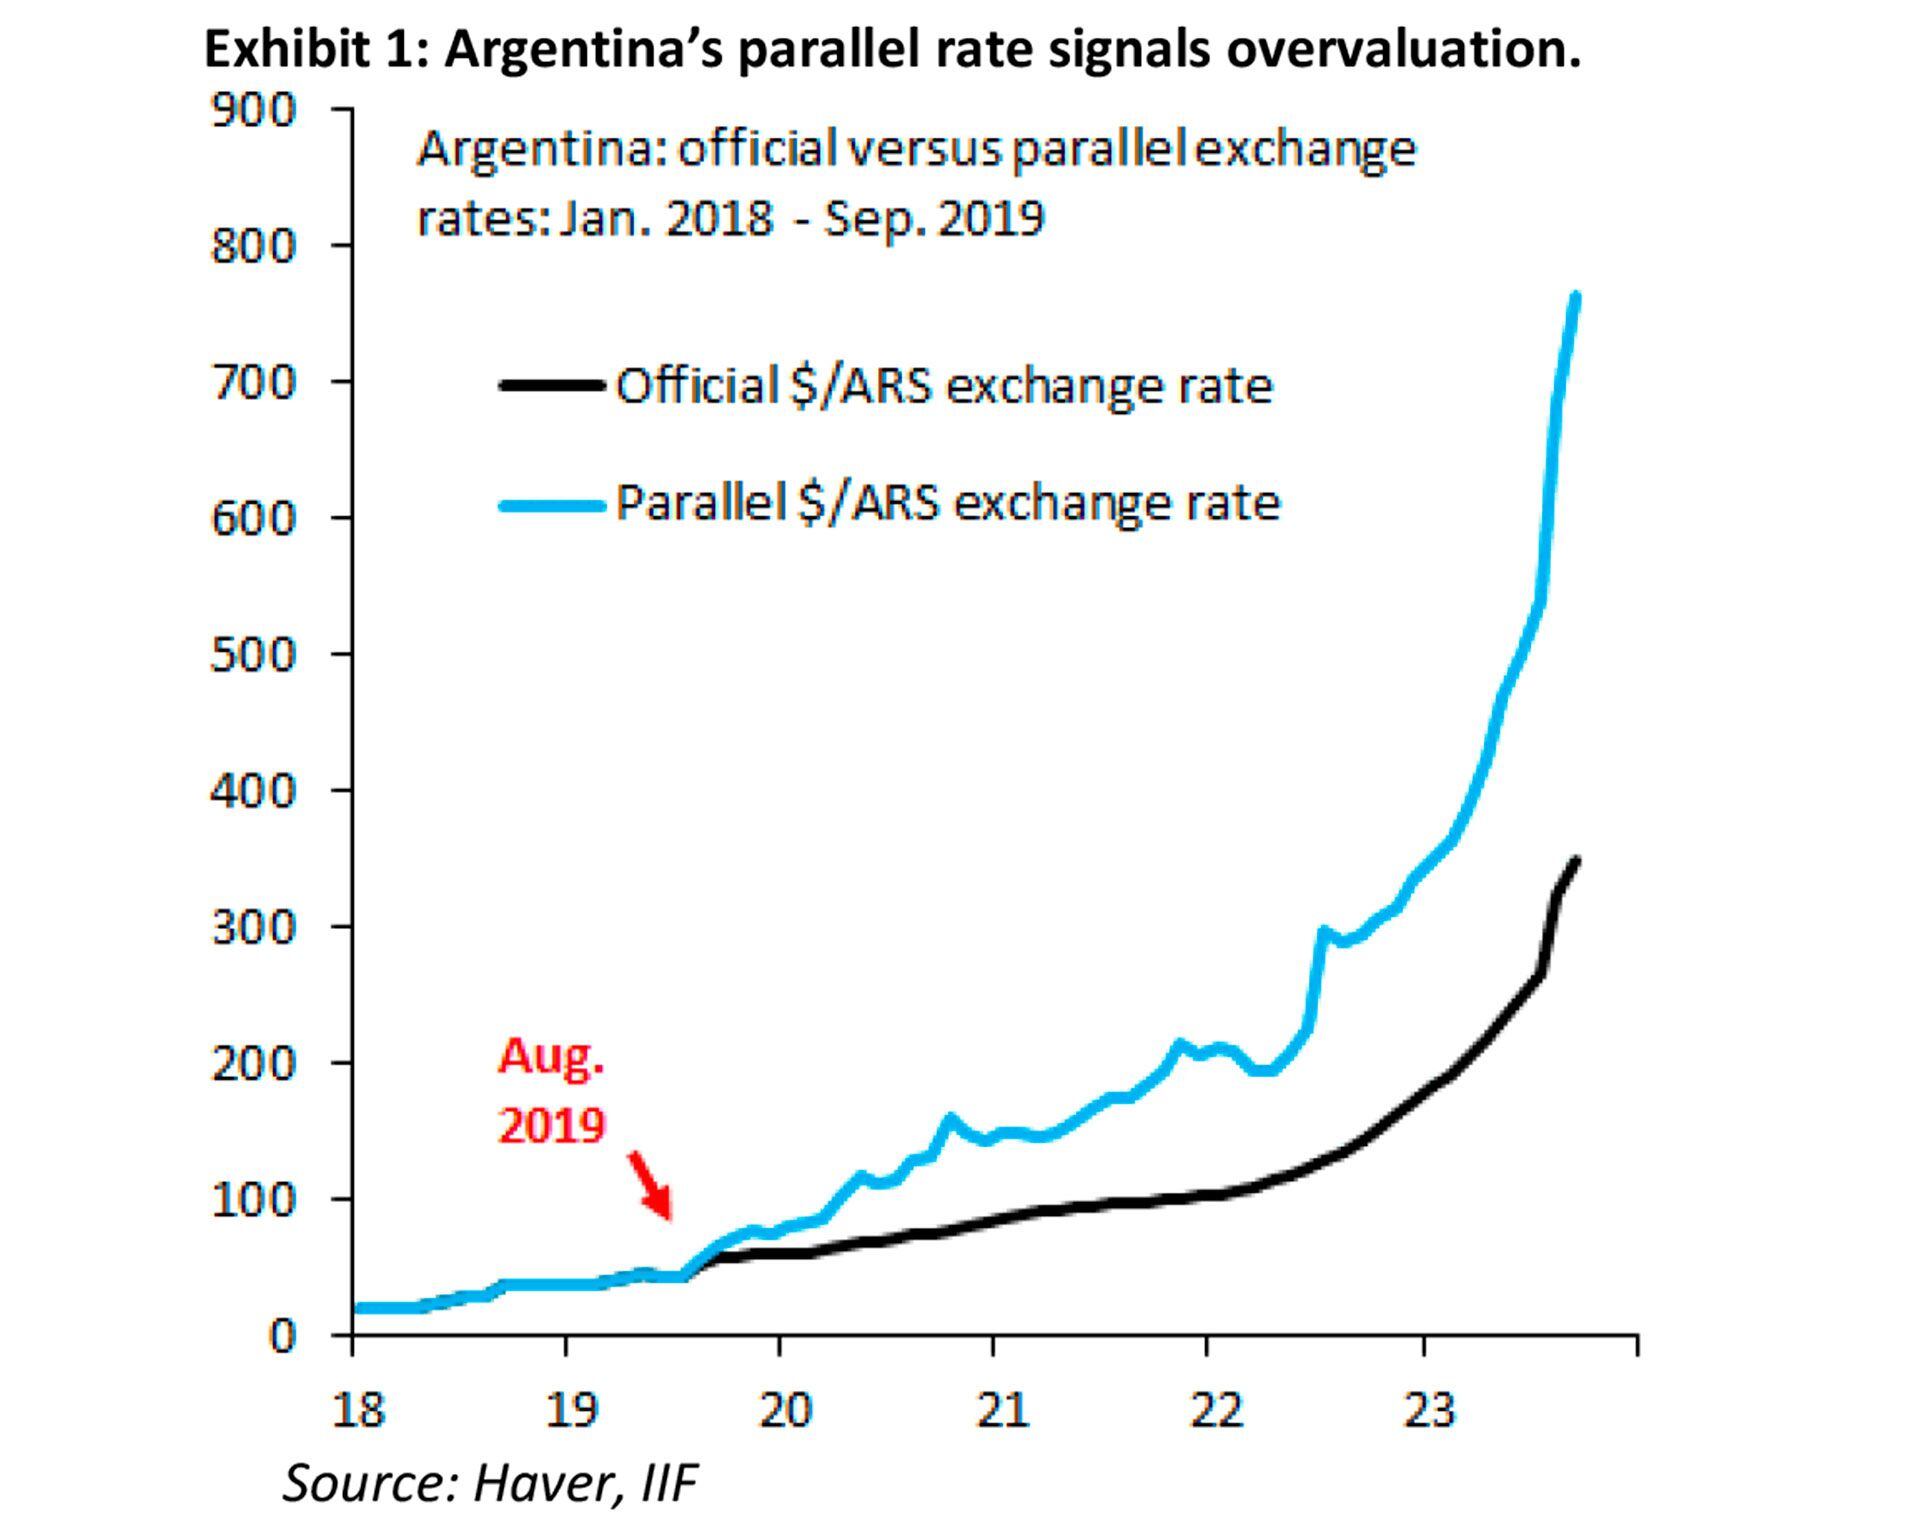 La sobrevaluación argentina
IIF